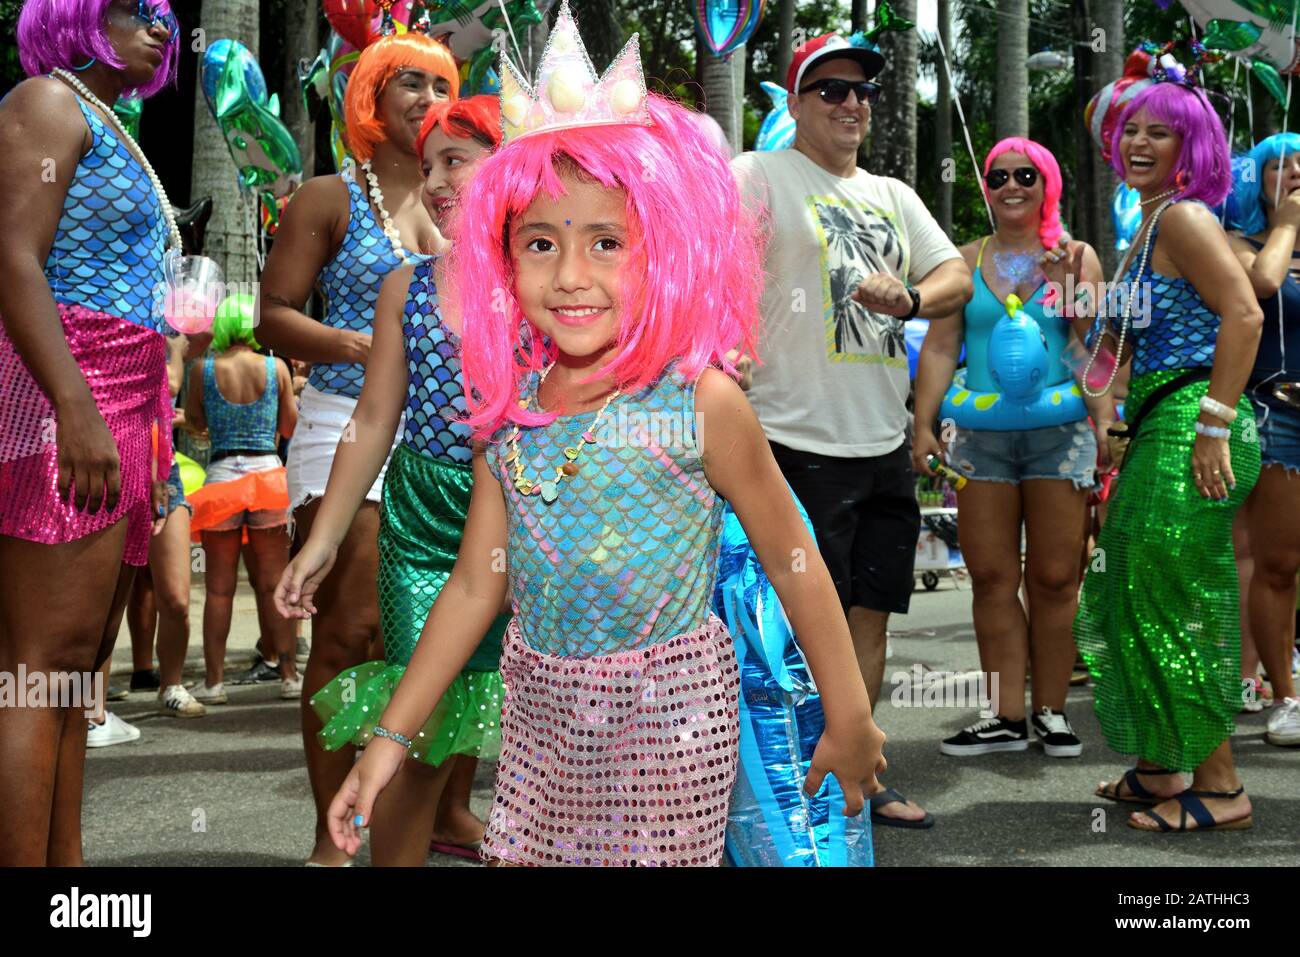 Lateinamerika, Brasilien - 17. Februar 2019: Glückliches, kostümiertes Kind hat viel Spaß beim Straßenfest des Karnevals in Rio de Janeiro. Stockfoto